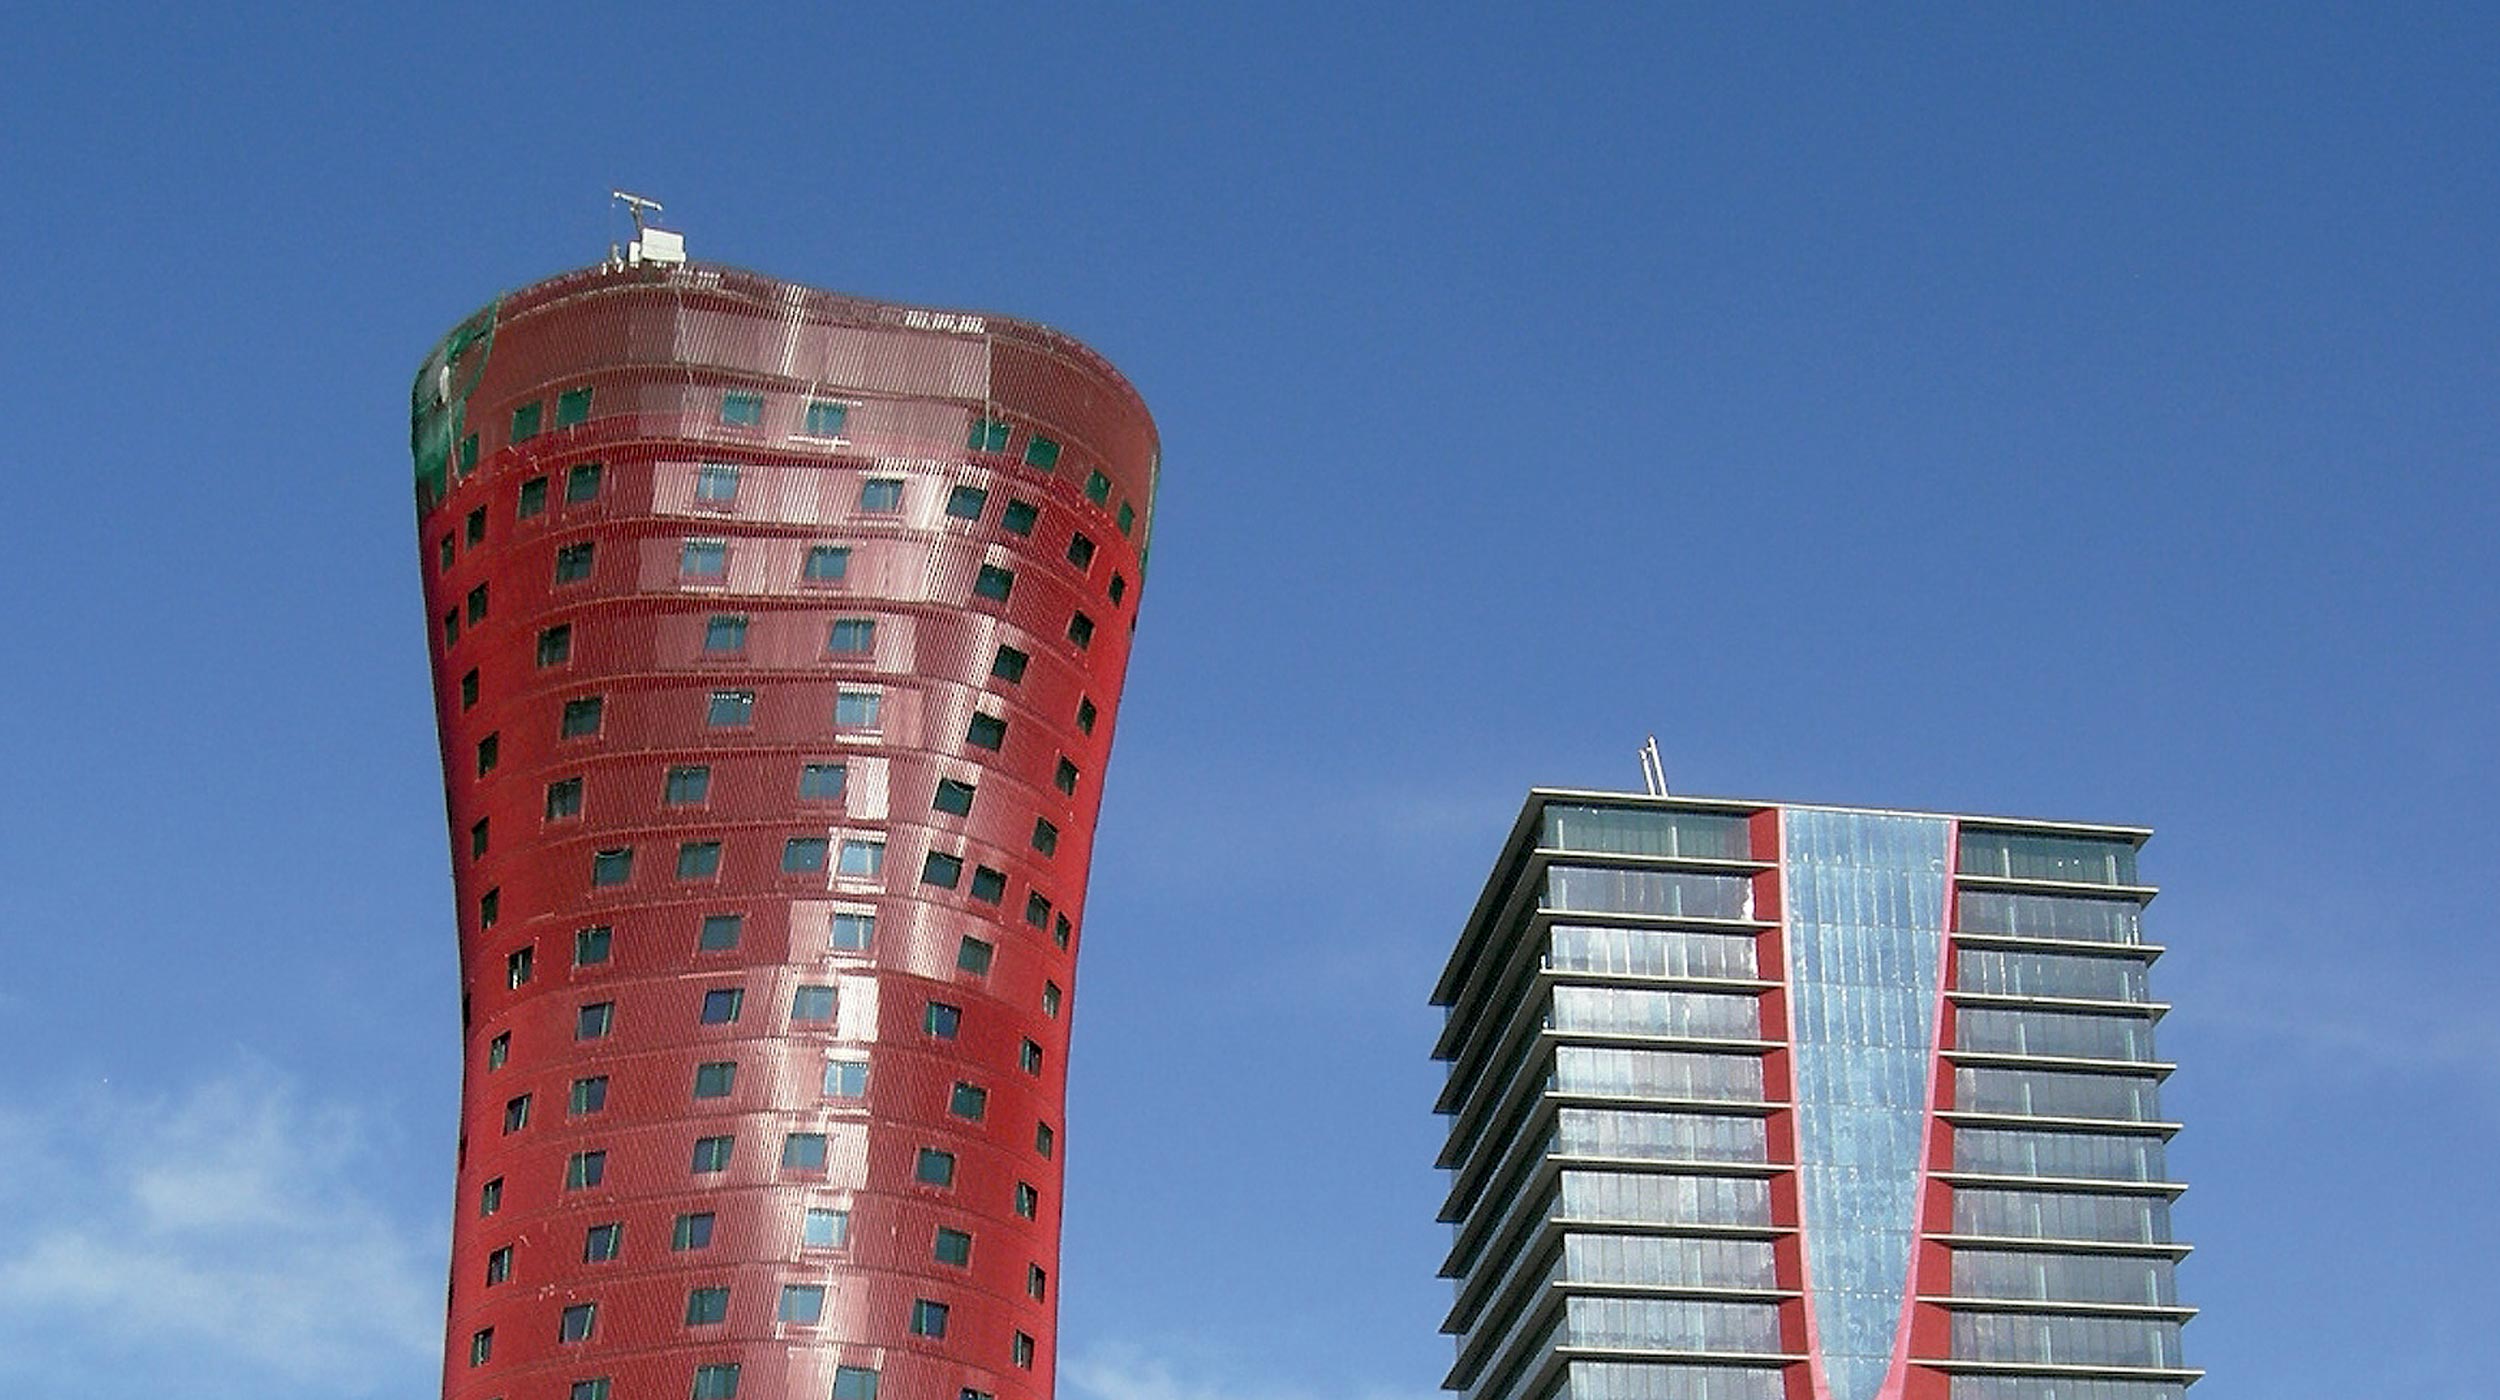 Las dos torres, diseñadas por el conocido arquitecto Toyo Ito, cuentan con una altura aproximada de 120 m.